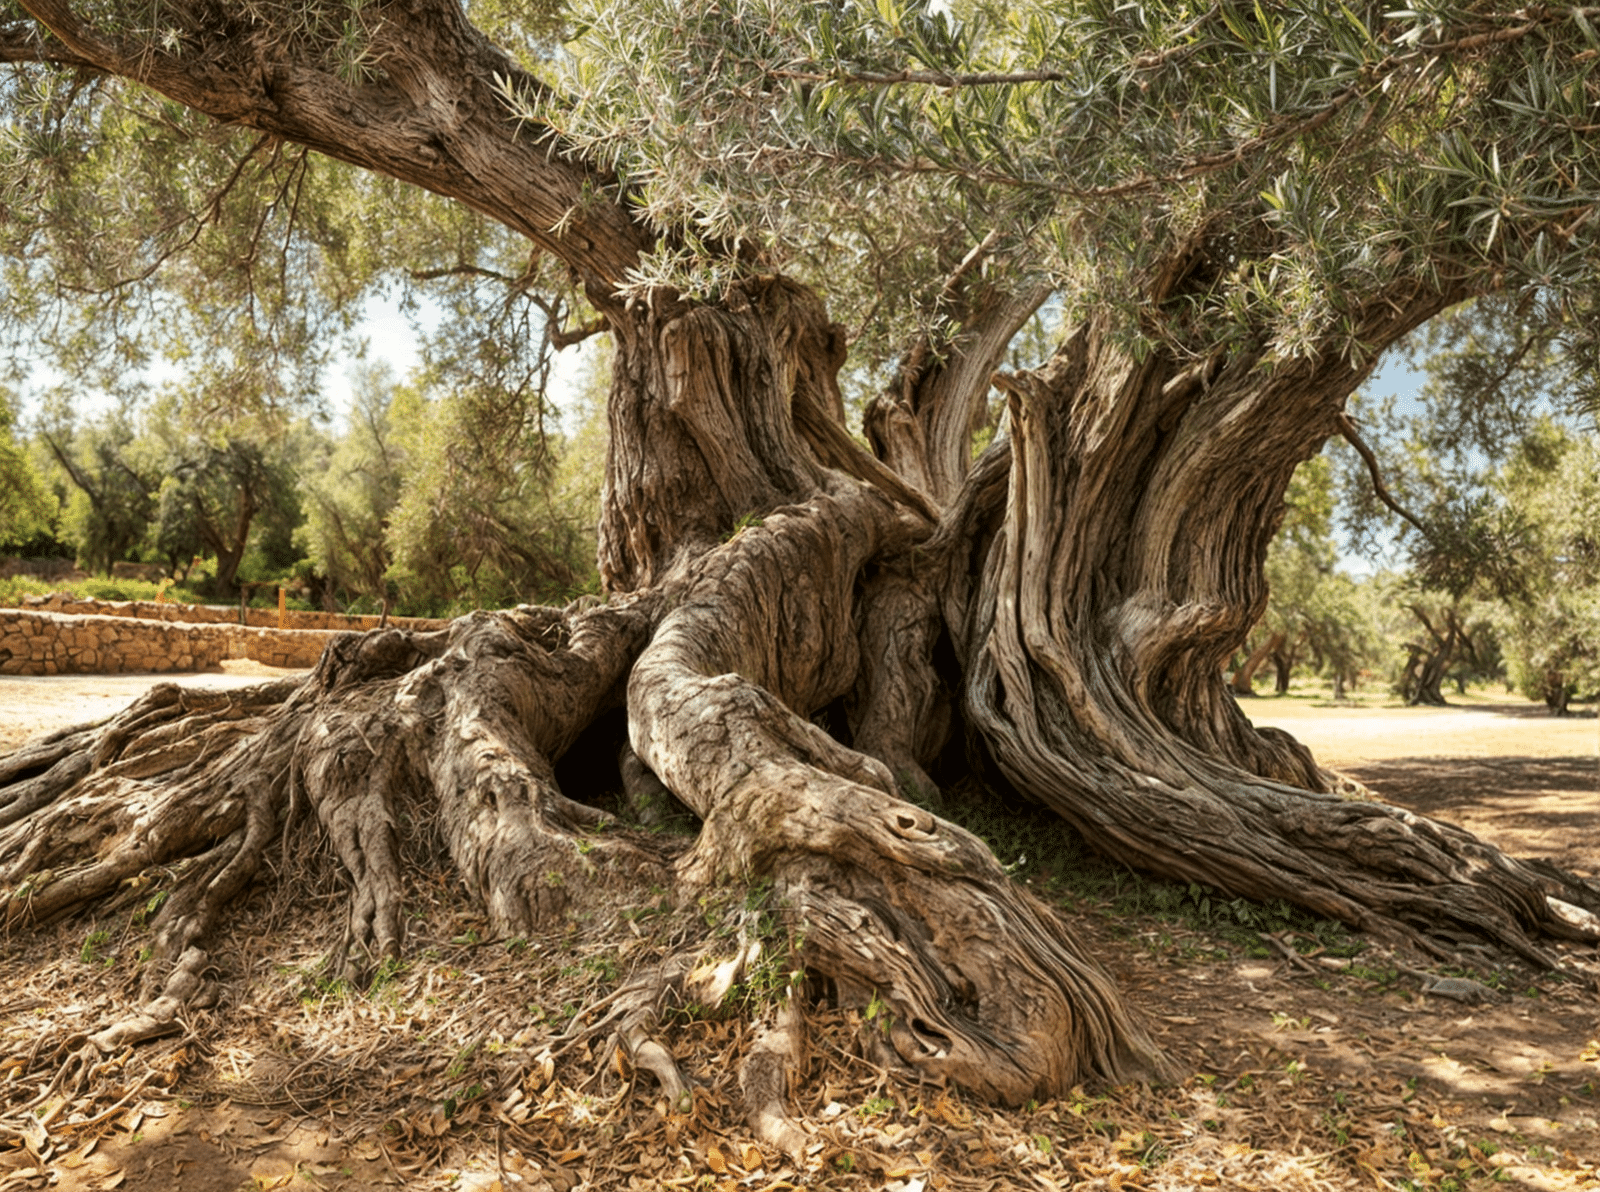 Olivo monumental milenario con tronco retorcido en un campo mediterráneo, símbolo de historia y longevidad del Olea europaea.